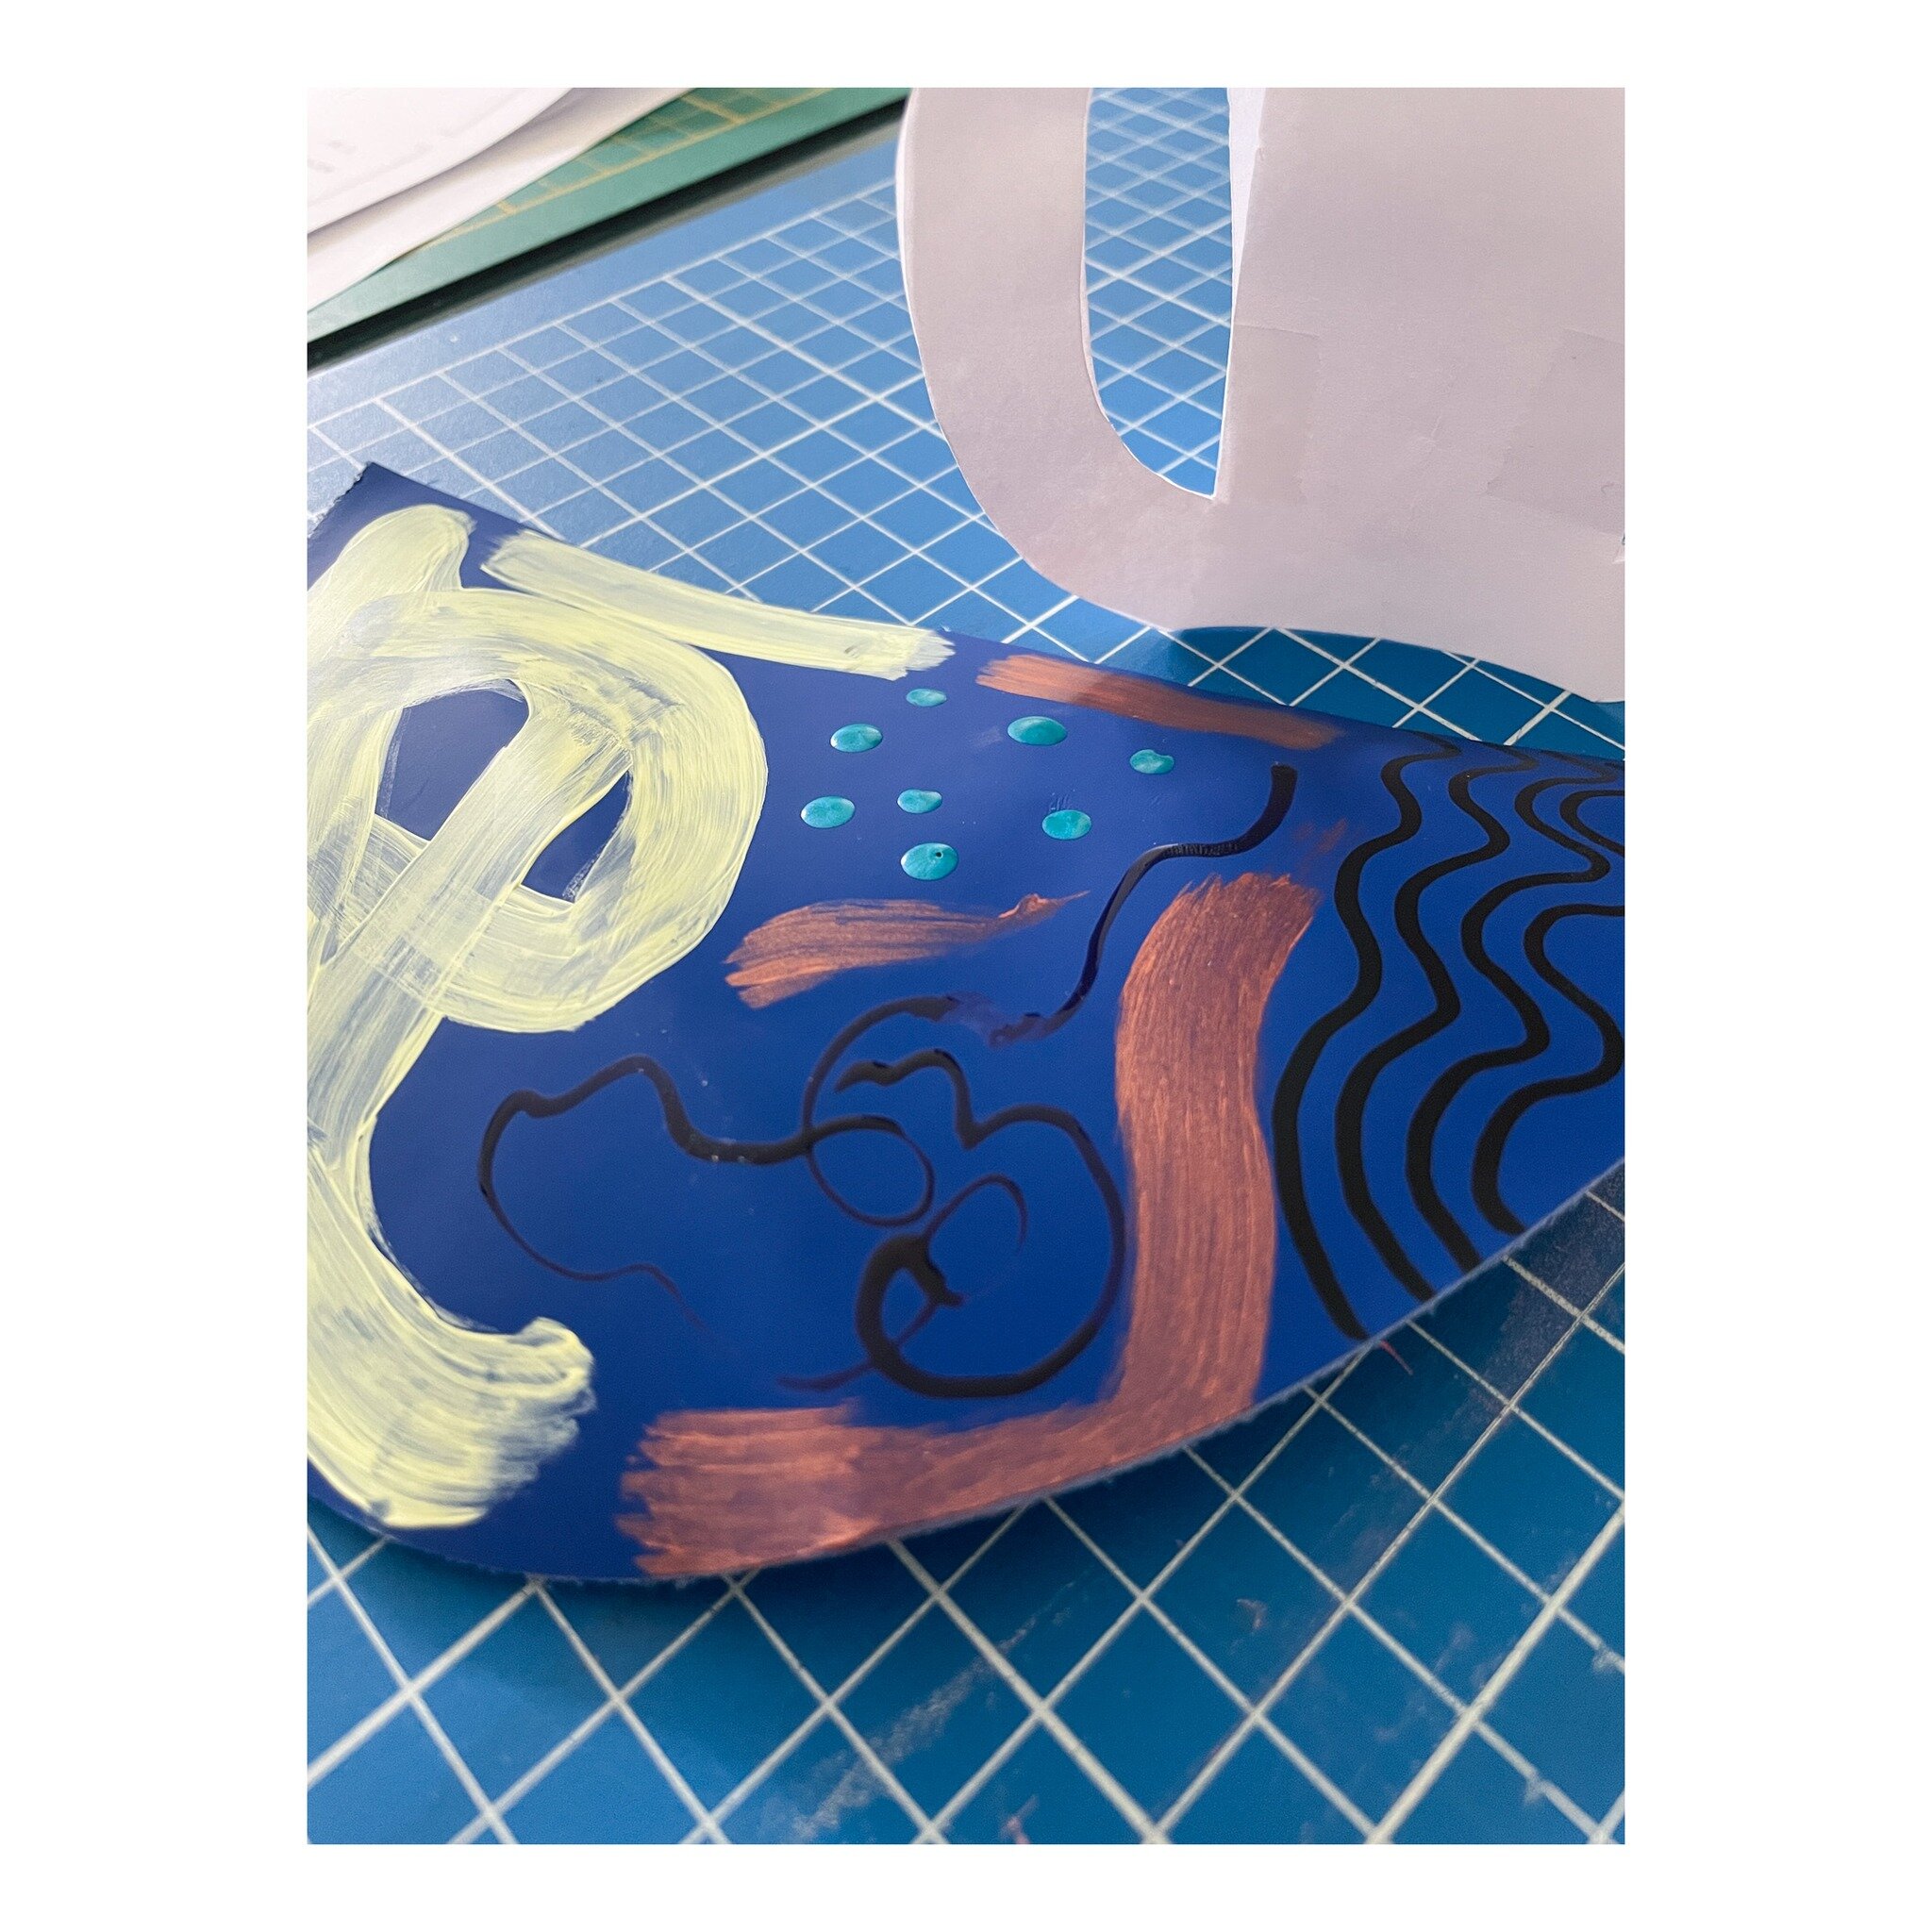 Construction de mes vases prototypes en papier et tests de diff&eacute;rentes techniques de peintures et encres sur cuir bleu. 
Bonne semaine &agrave; tous ✨

#vases #objetsingulier #cuir #leather #design #designhome #objetsencuir #decointerieur #art